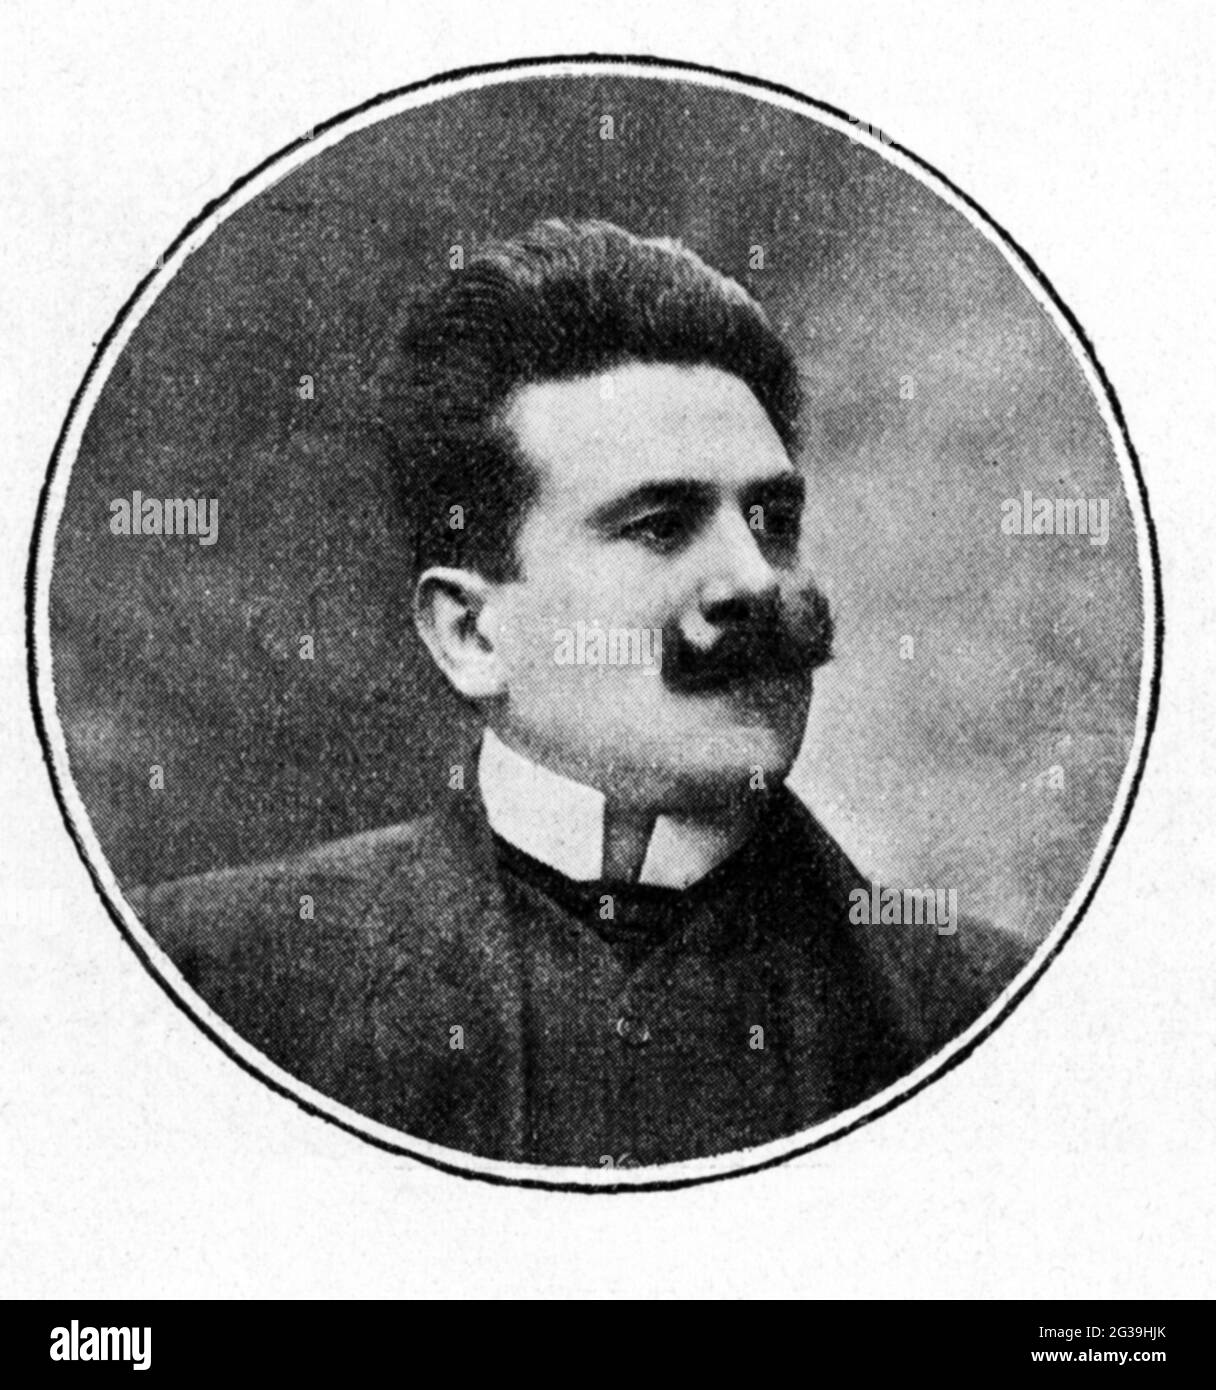 1910 , ITALIA : il compositore e direttore di musica italiana GIANNI BUCCERI ( 1872 - 1953 ) - MUSICA - COMPOSITORE - DIRETTORE D' ORCHESTRA - MUSICA - classica - ritratto - baffi - baffi - colletto - colletto --- Archivio GBB Foto Stock